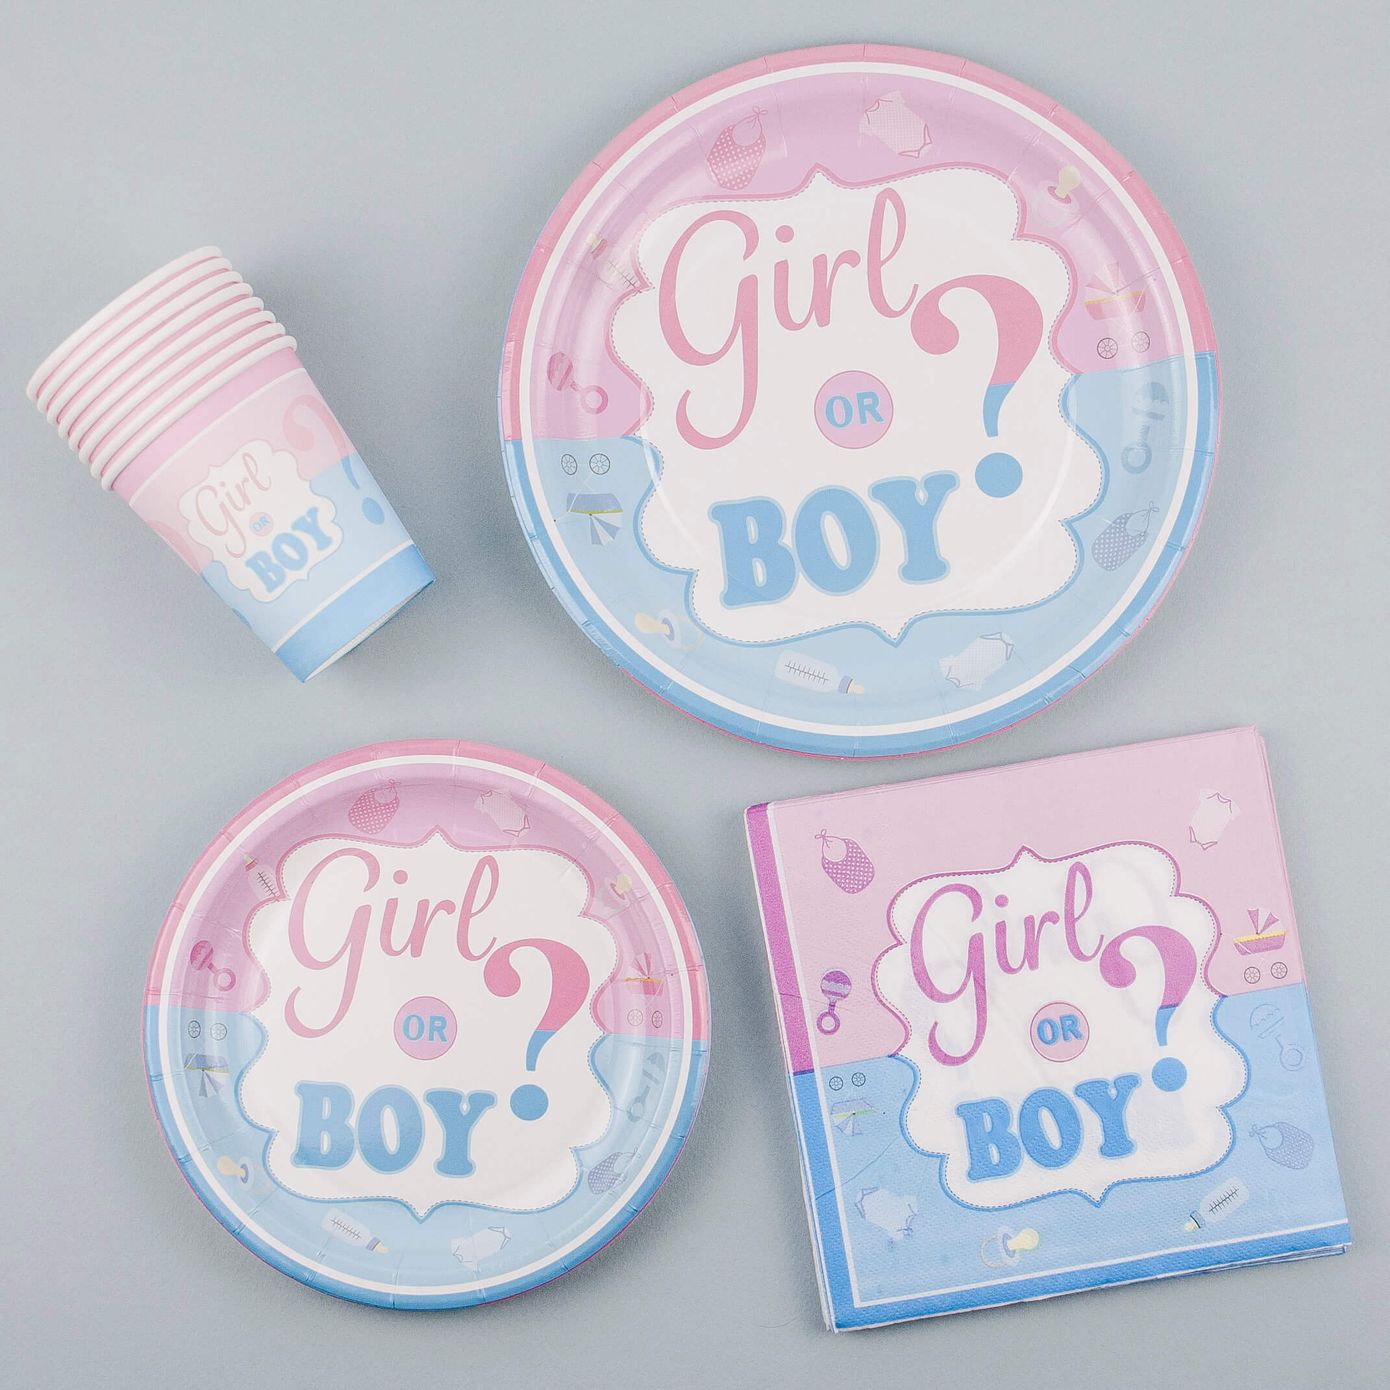 Набір посуду на Ґендер Паті "Boy or Girl?" на 8 осіб, 40 шт.